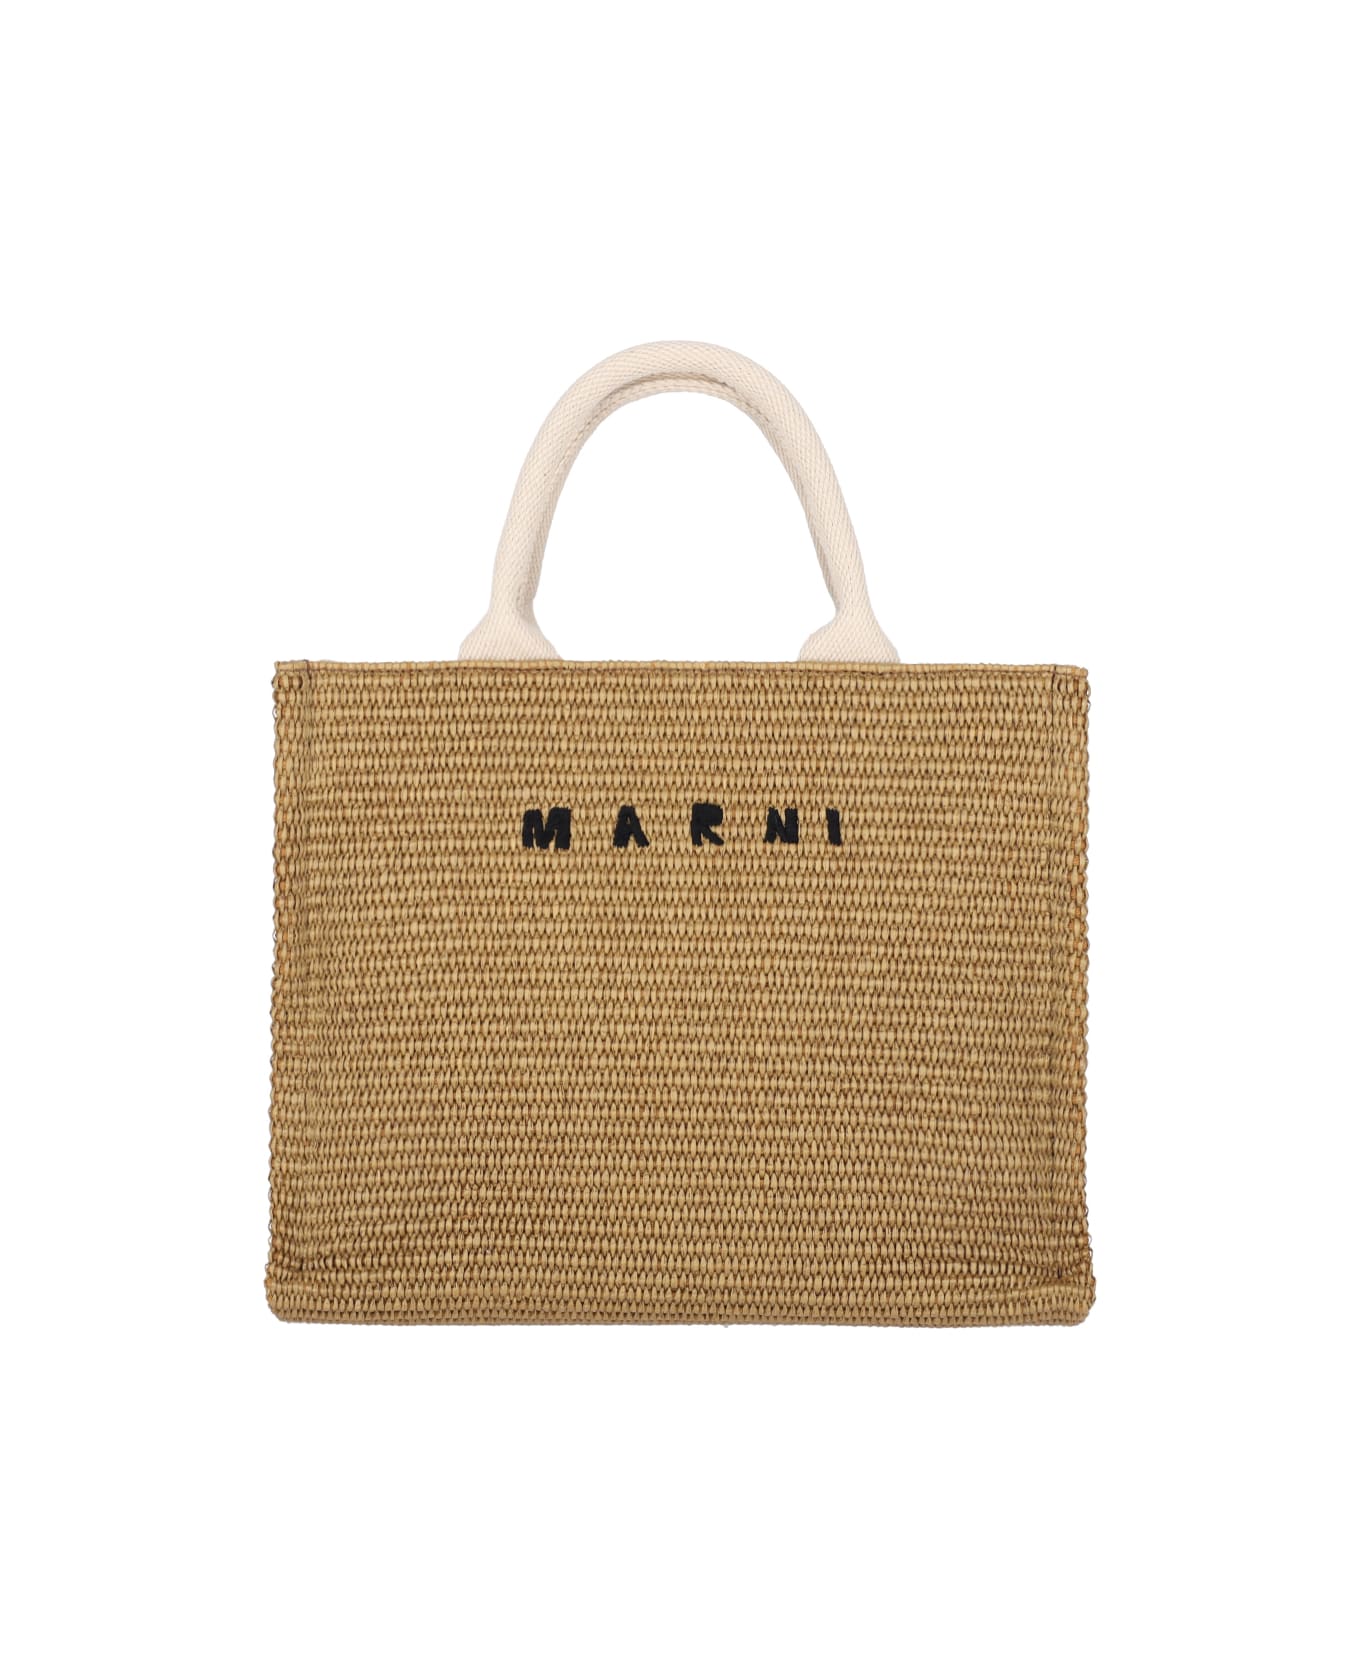 Marni Logo Small Tote Bag - Brown トートバッグ